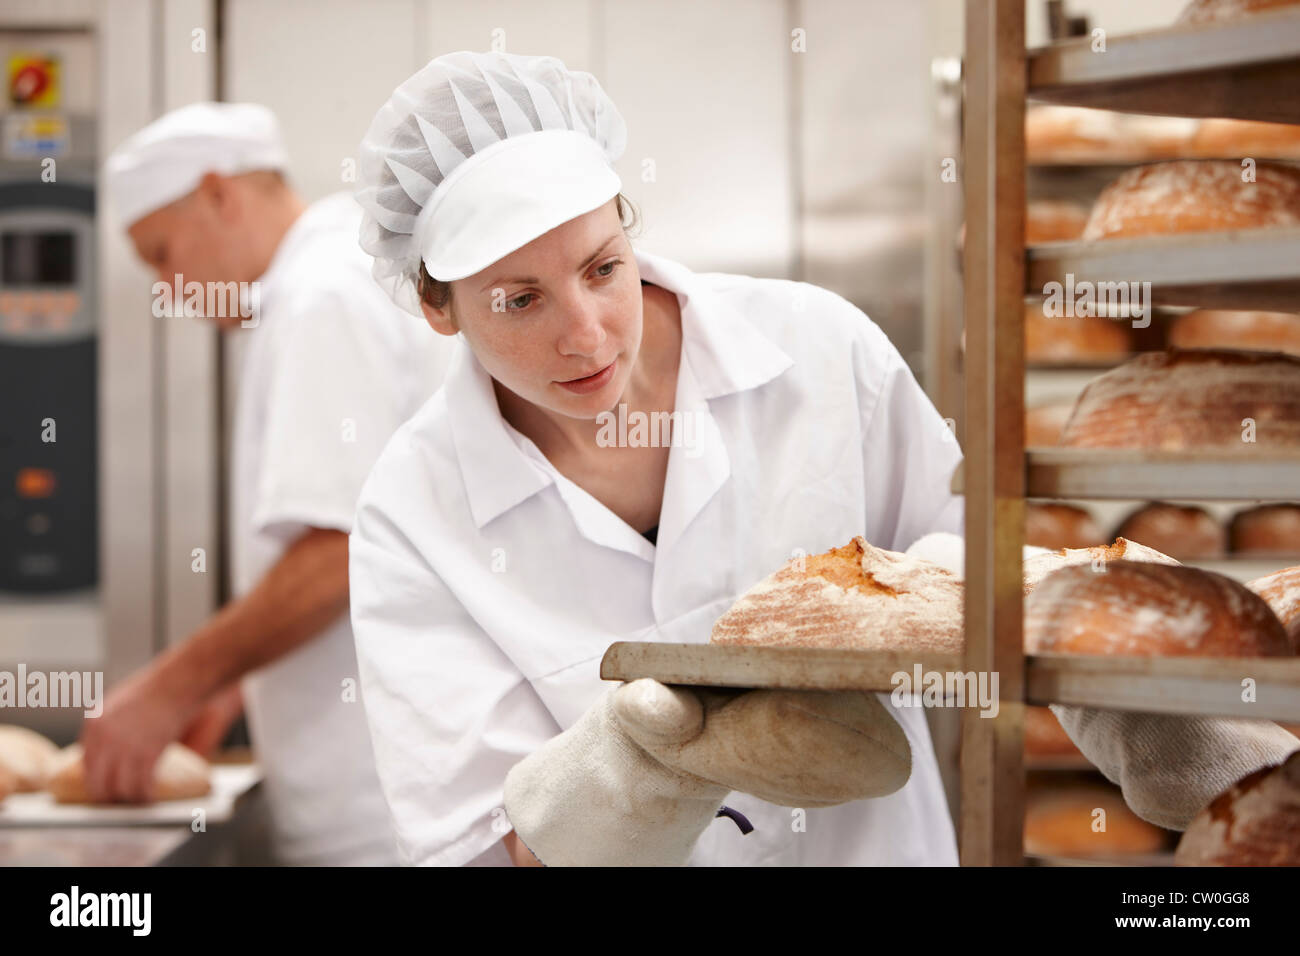 Bac de transport Chef de pain dans la cuisine Banque D'Images